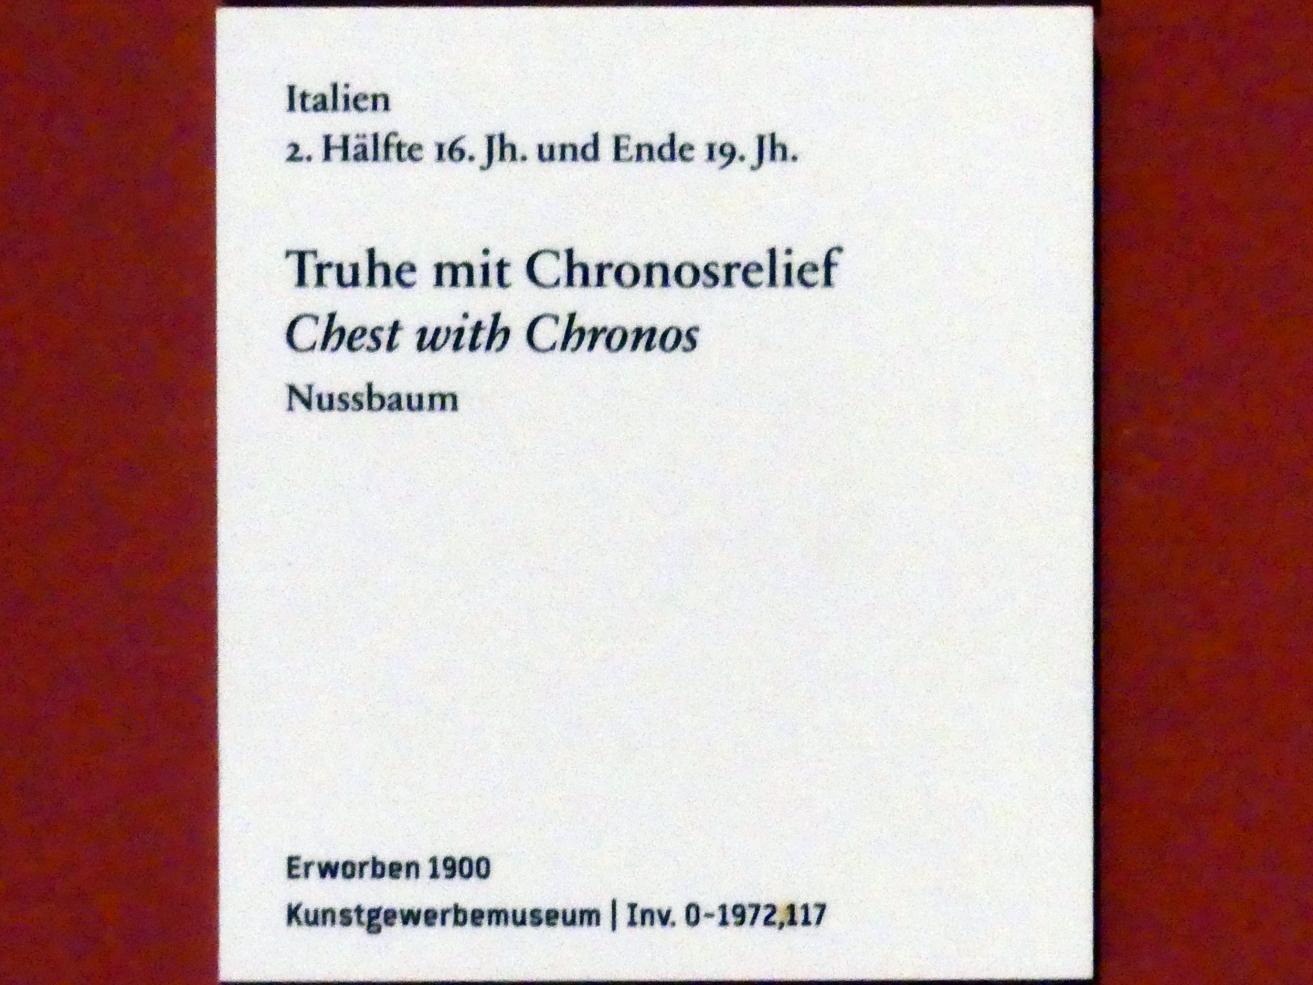 Truhe mit Chronosrelief, Berlin, Bode-Museum, Saal 125, 2. Hälfte 16. Jhd., Bild 3/3